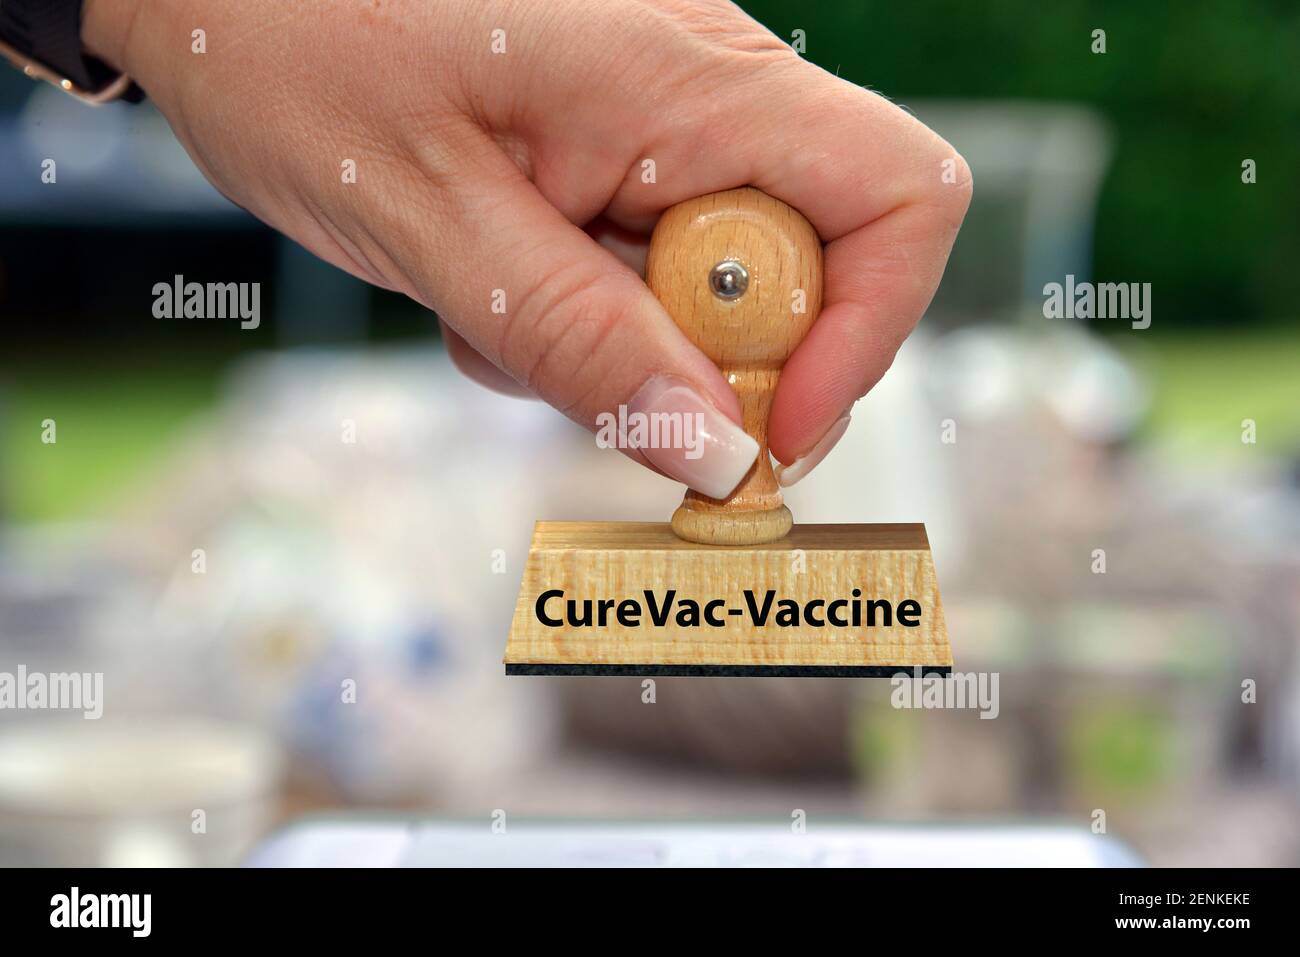 Stempel, Holzstempel, Aufschrift: CureVac, Impfstoffhersteller, Pharmaunternehmen, Covid-19 Impfstoff, Forschung, mRNA-Impfstoff, mRNA, Caccine, Vakz Foto de stock